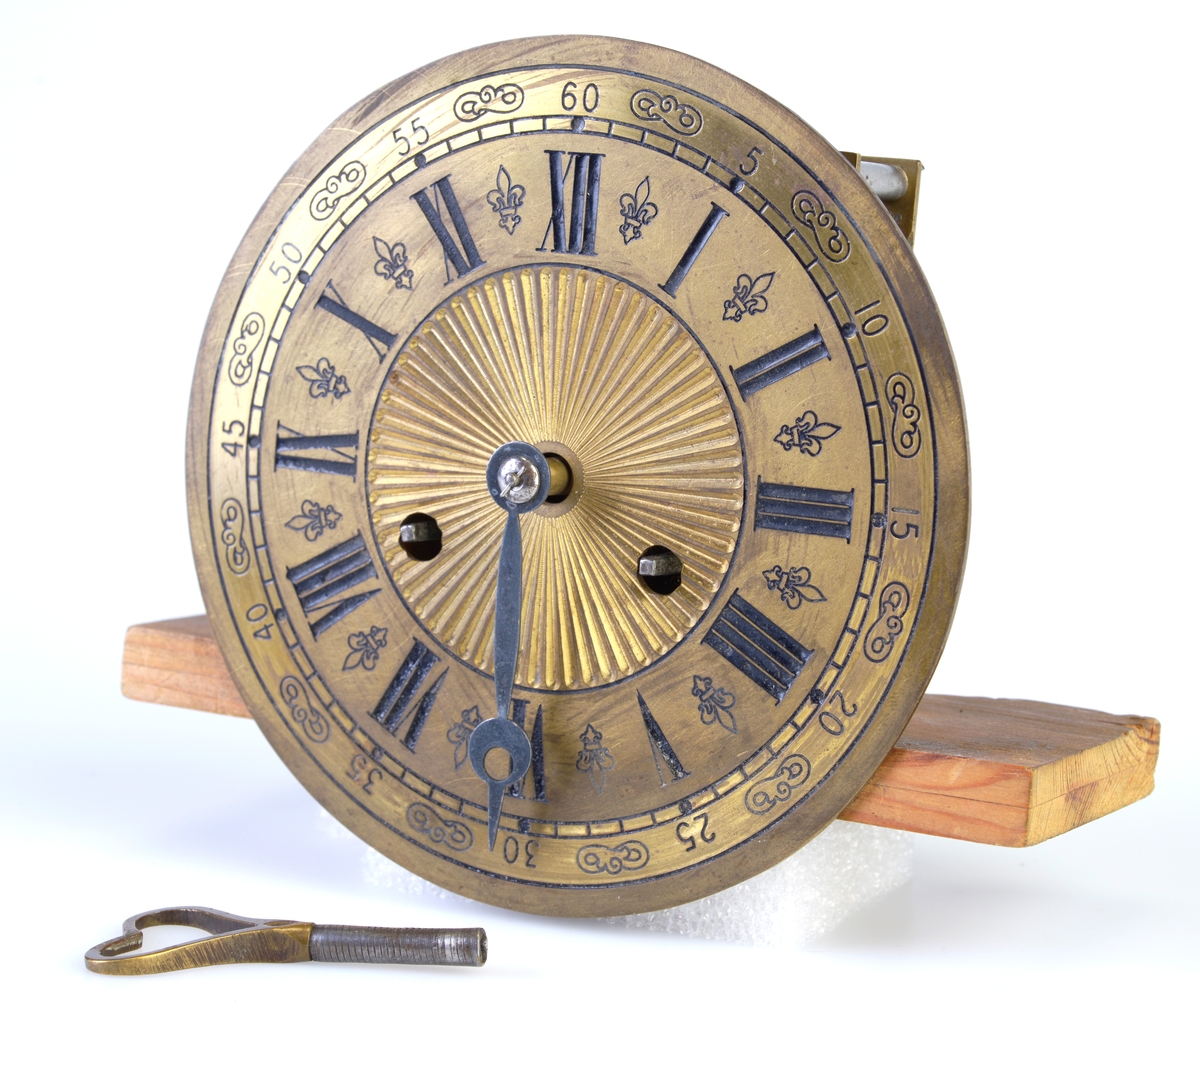 Et mekanisk urverk med klokkeslag hver halve time og hver hele time. Med opptrekksnøkkel og to opptrekkspunkt gjennom urskiven. På urskiven benyttes både arabiske tall (minutt) og romerske tall (time).